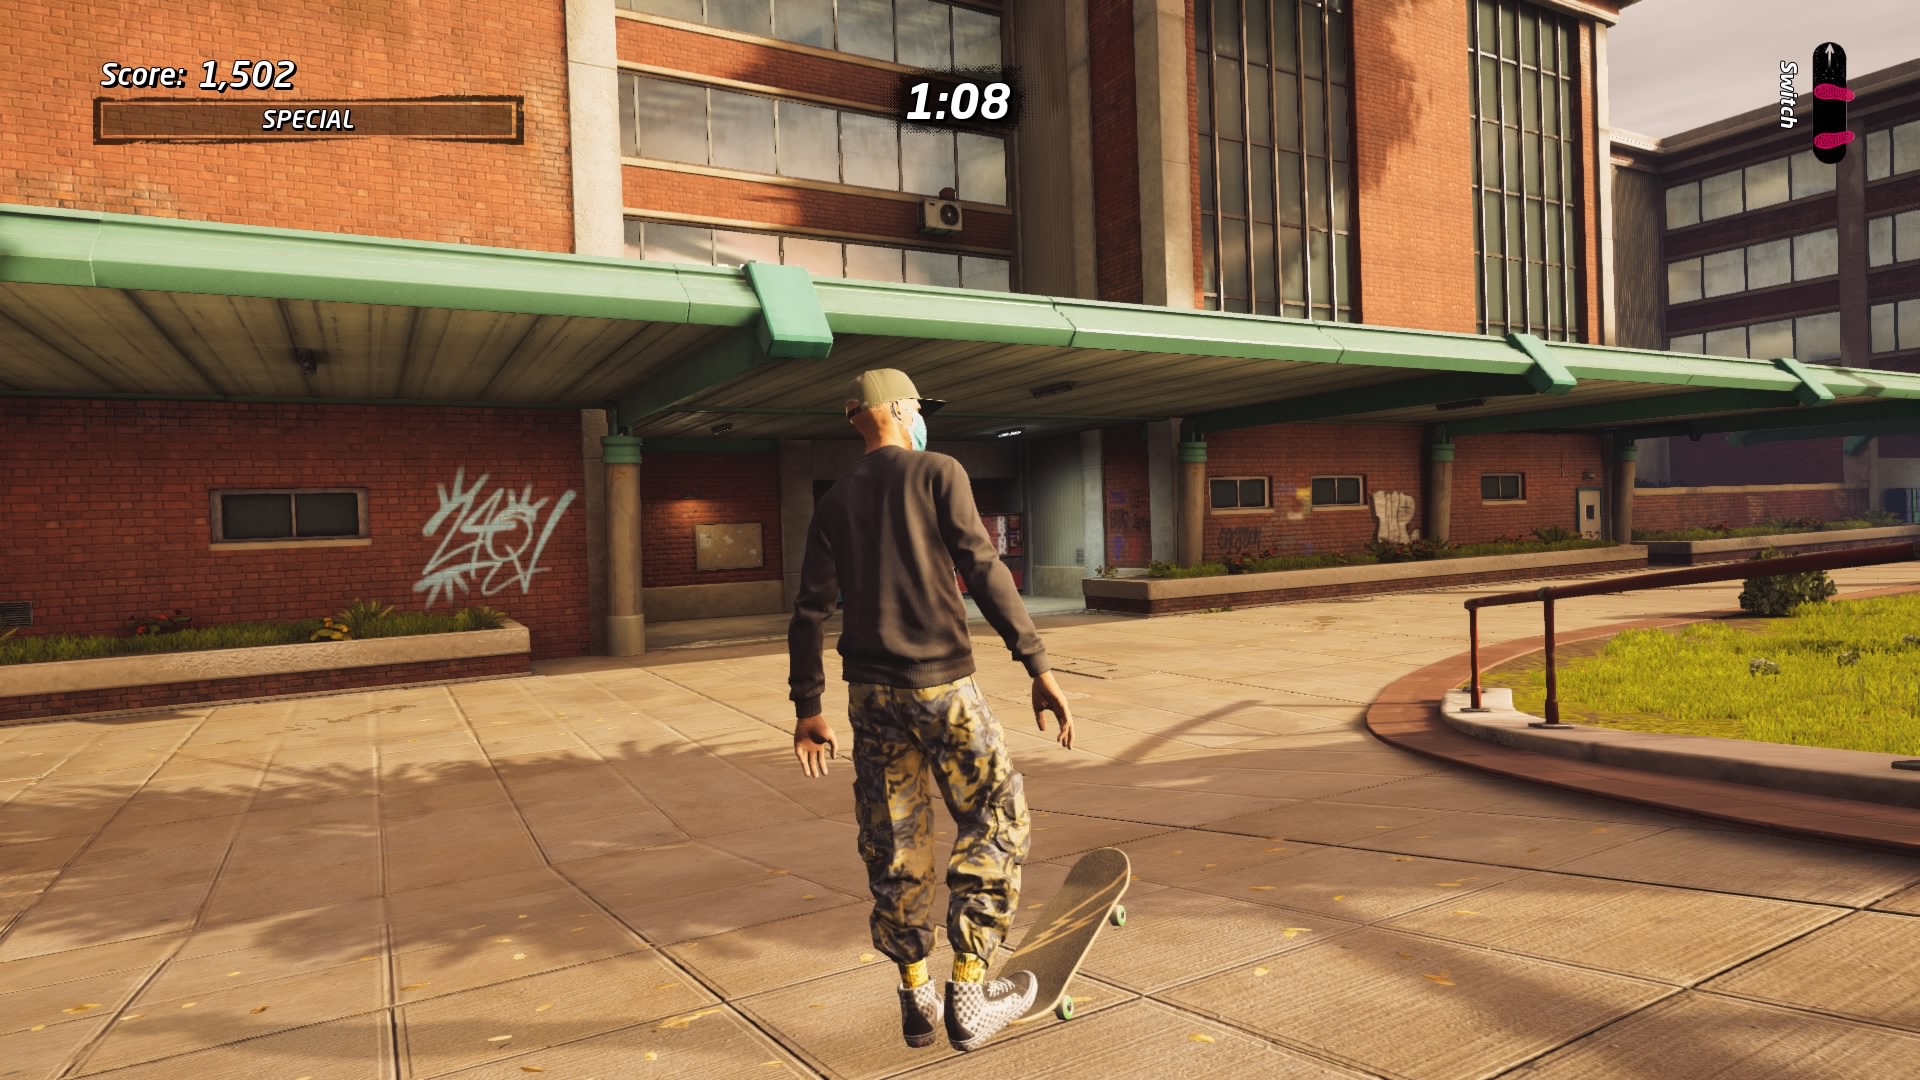 Captura de pantalla del juego Tony Hawk's Pro Skate 1 + 2